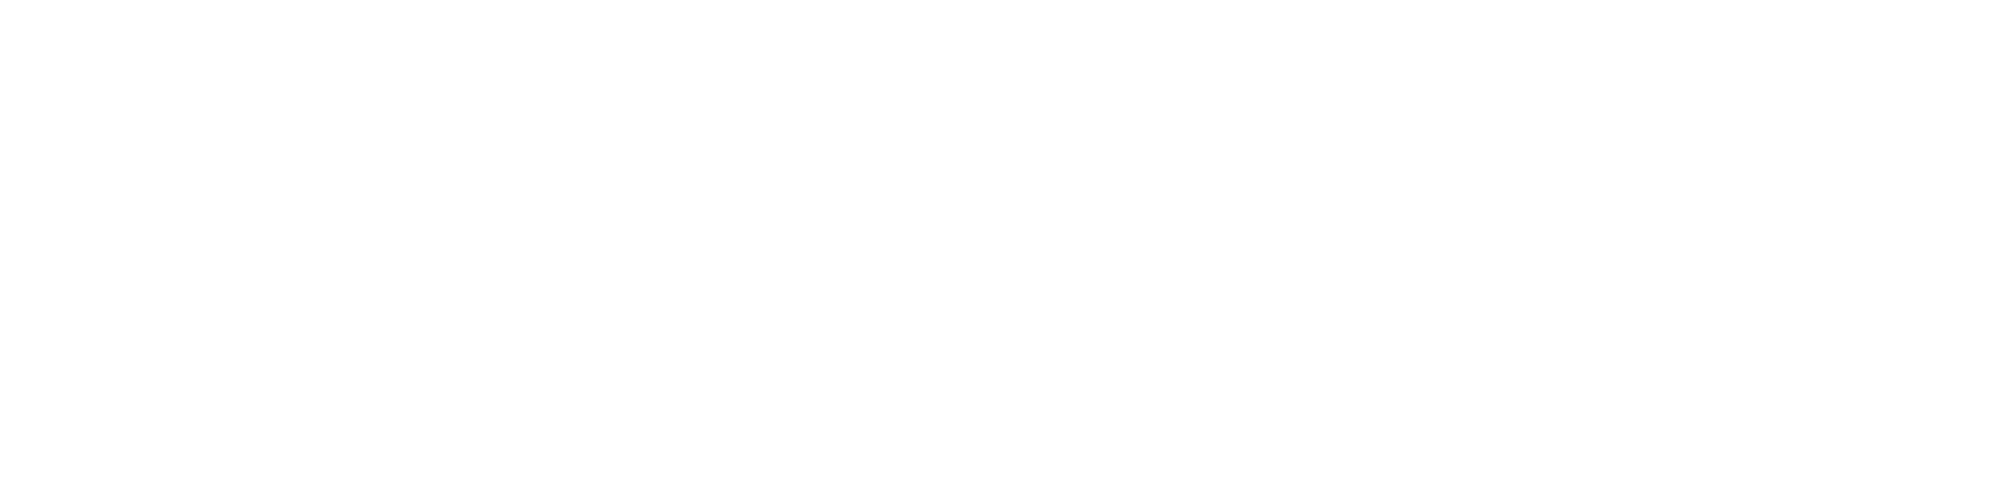 Dr. Mijatovic & Döbber